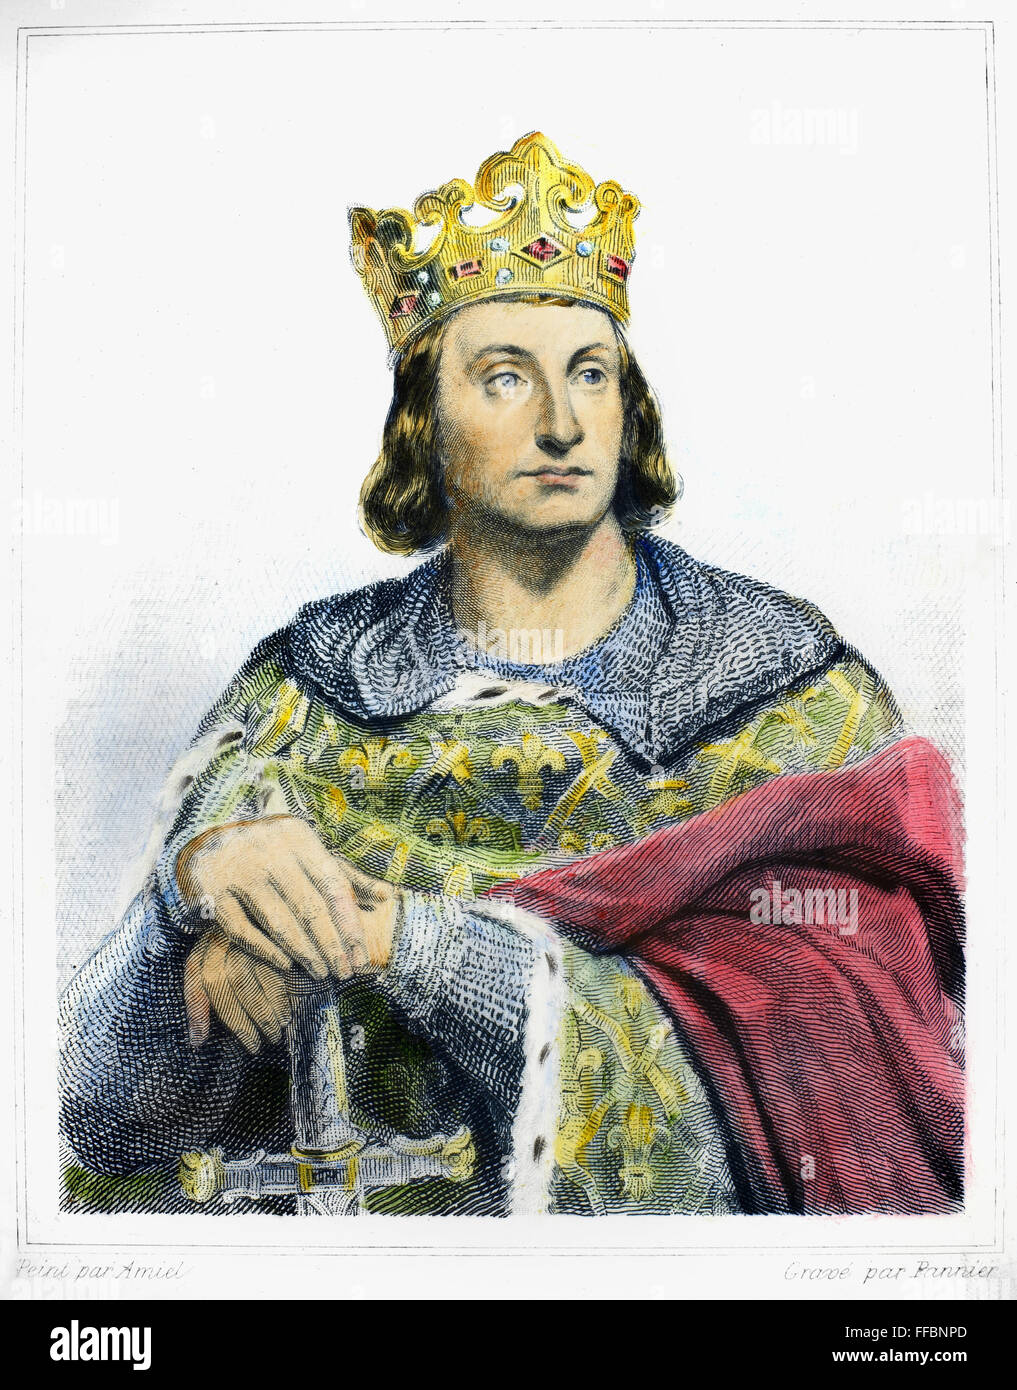 PHILIPP II. (1165-1223). /nKnown als Philip Augustus. König von Frankreich, 1180-1223. Stahl, Gravur, Französisch, 19. Jahrhundert. Stockfoto